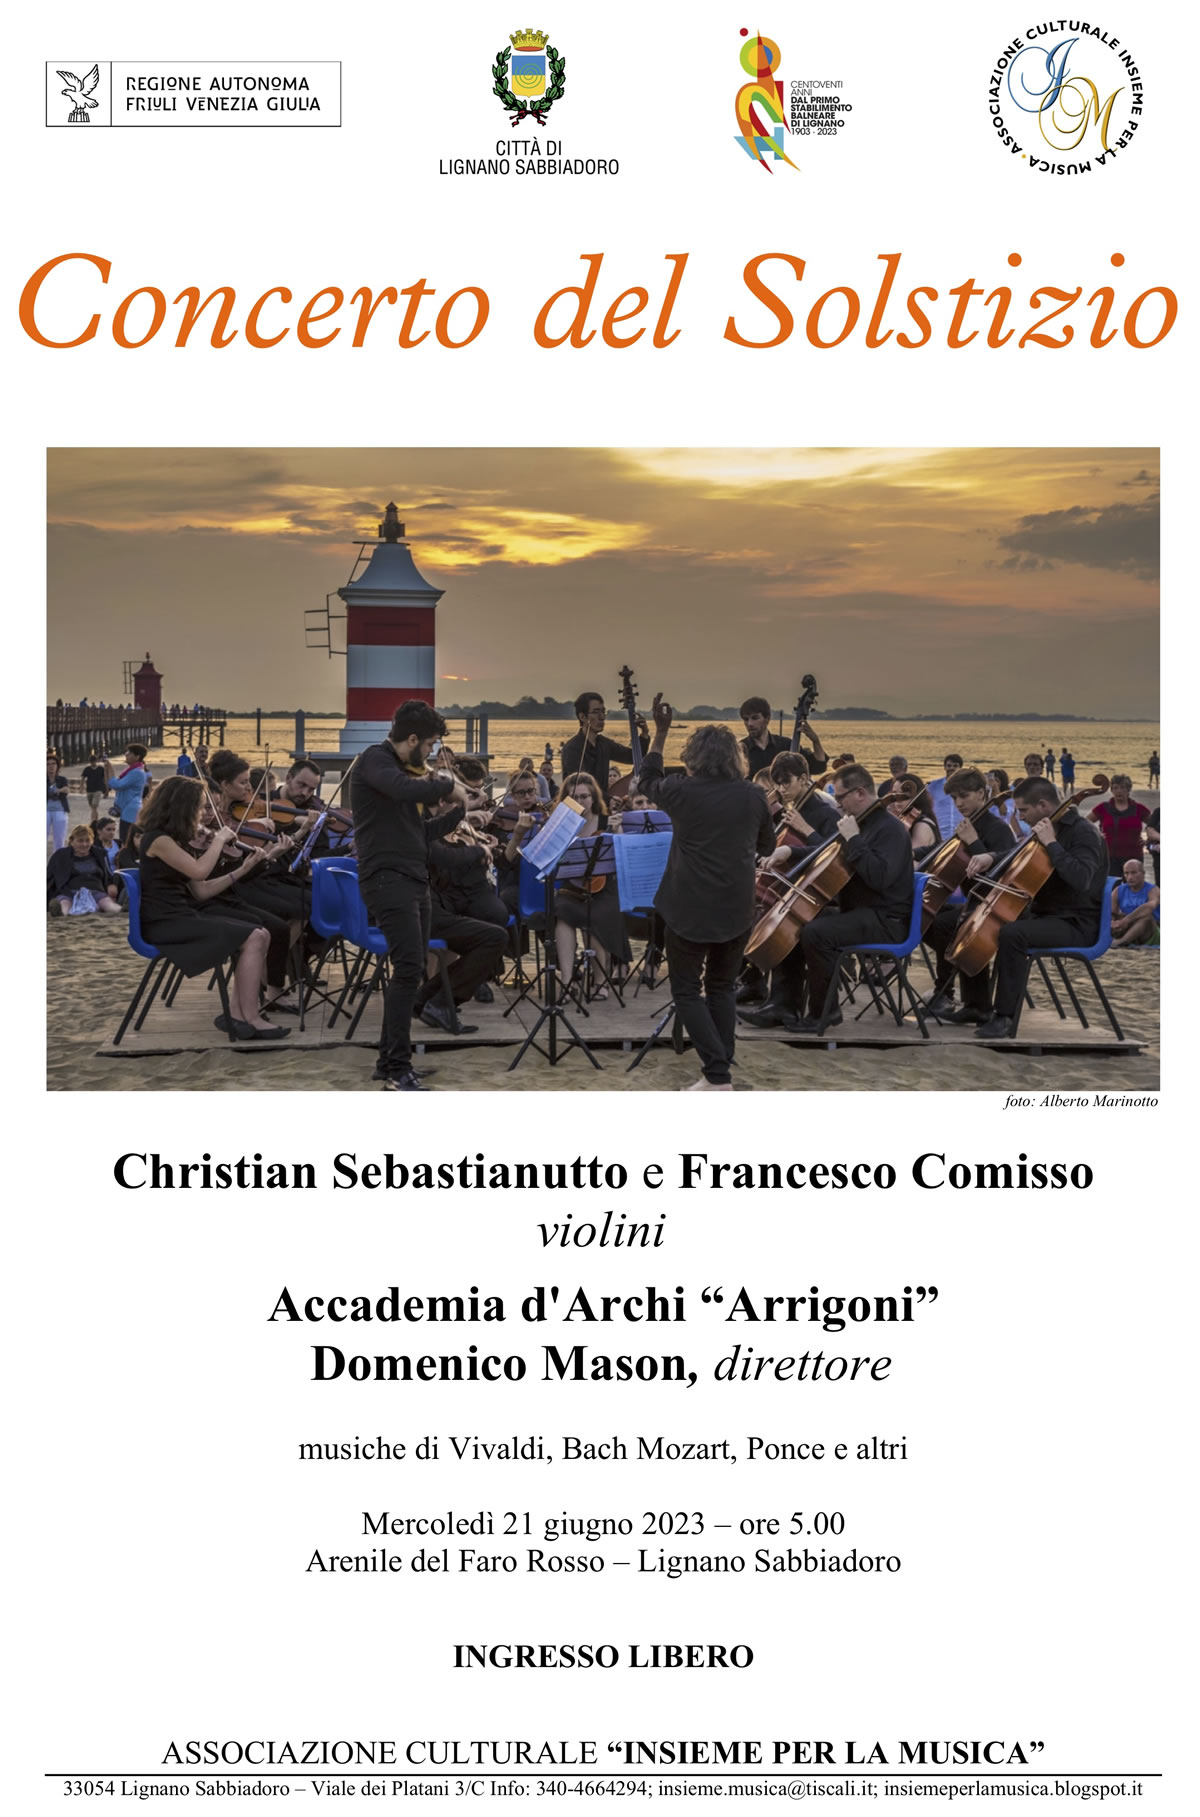 Concerto del solstizio estate Lignano Sabbiadoro